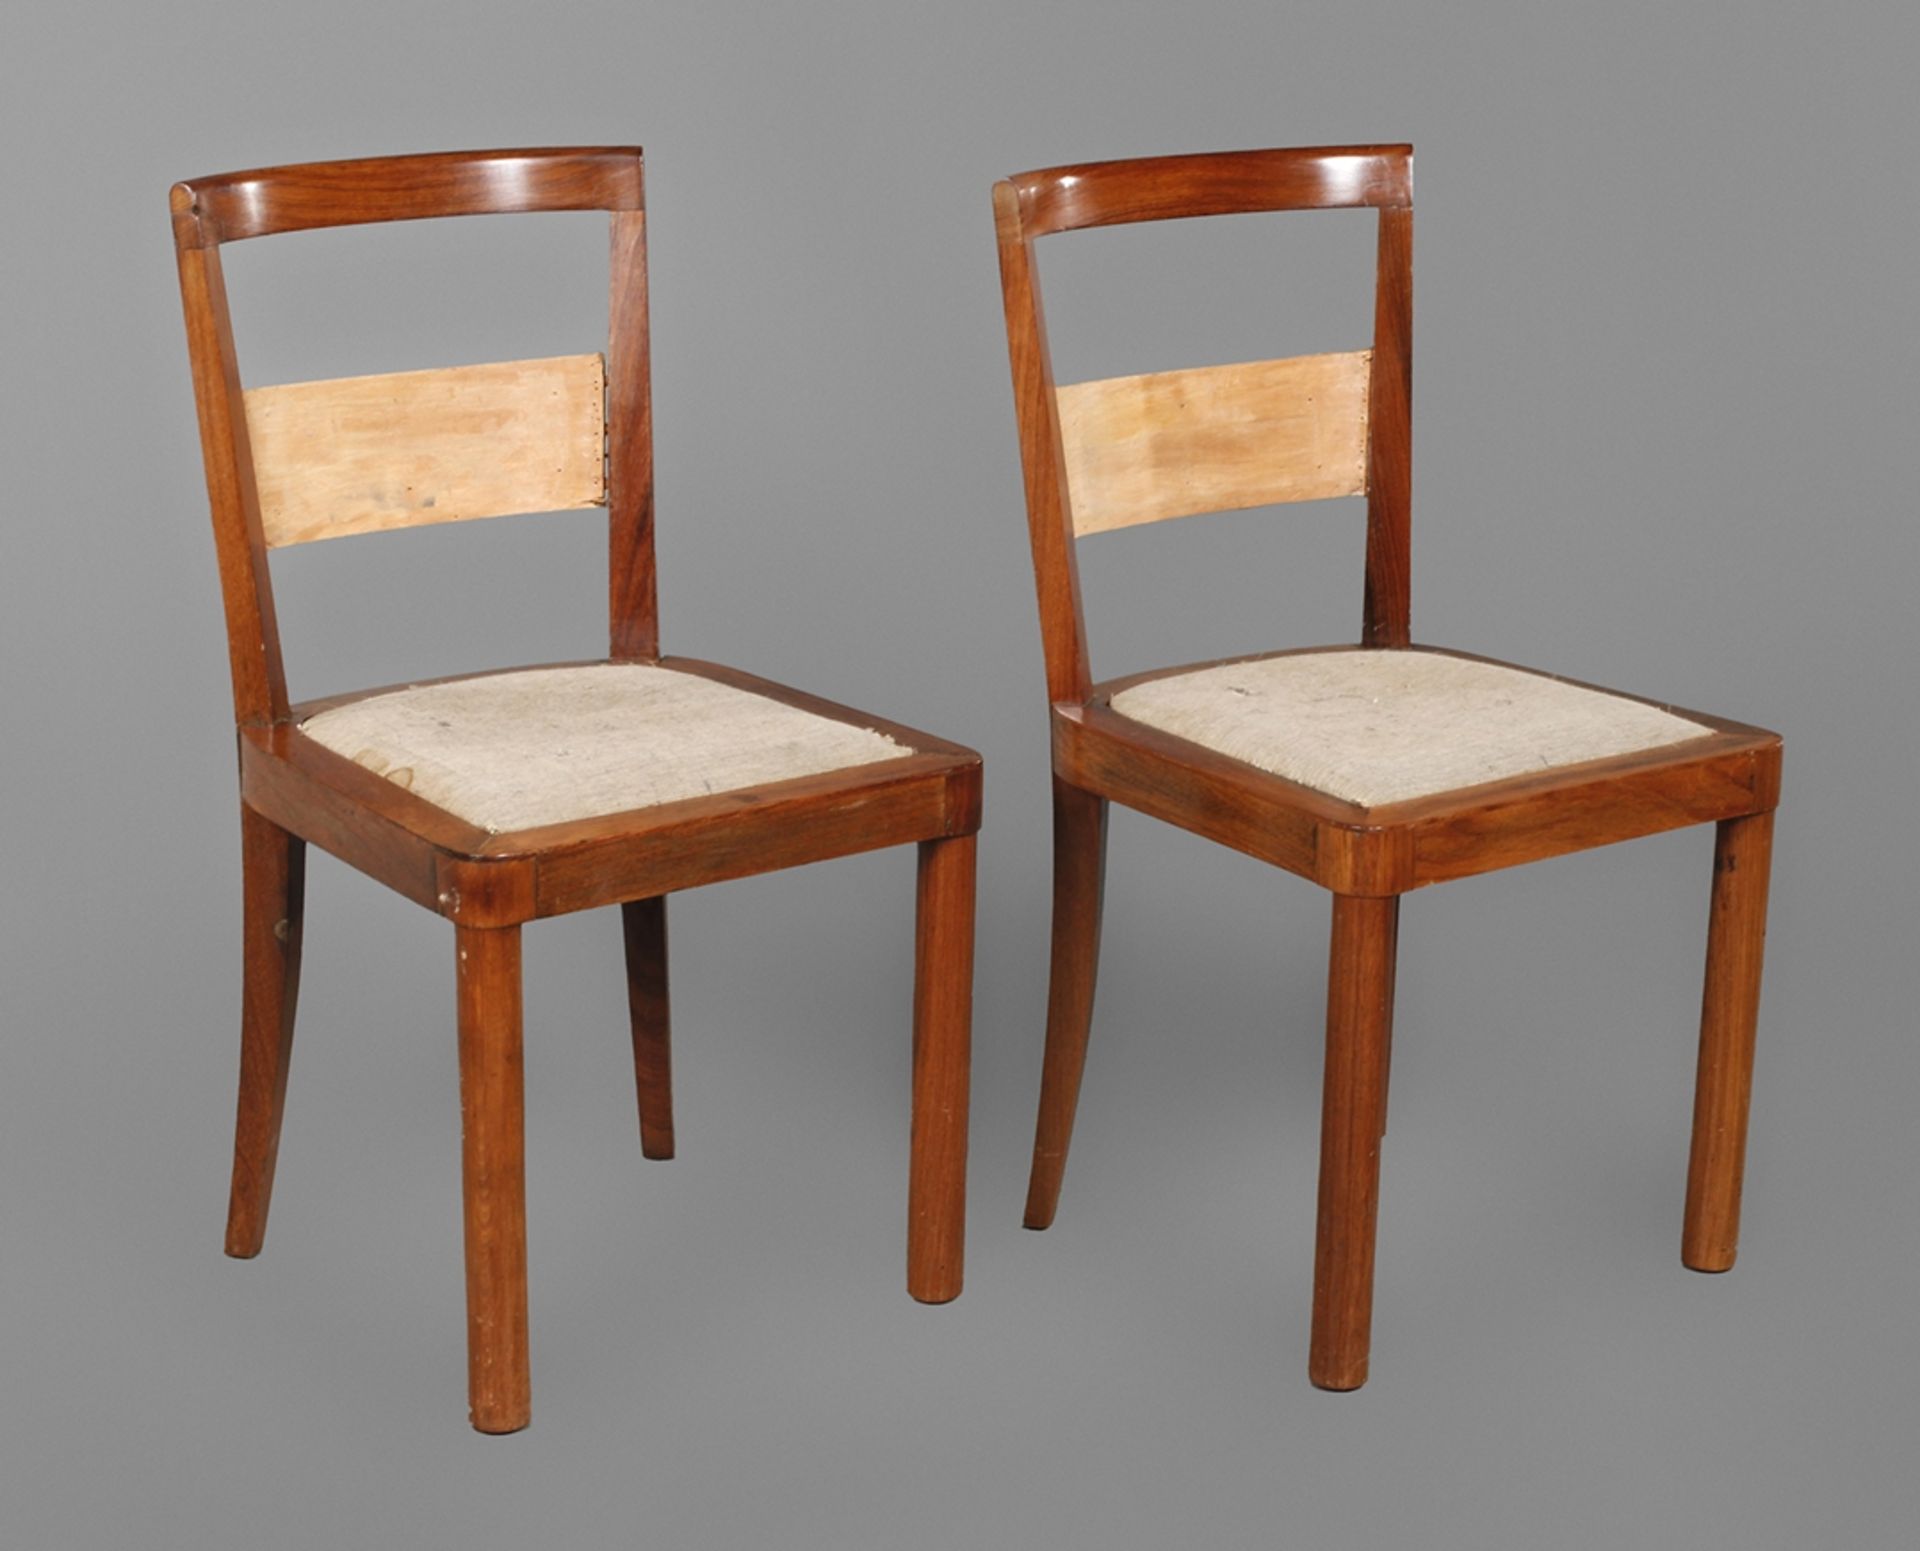 Paar Stühle deutsch, um 1925, indischer Palisander massiv und furniert, originales eingelegtes